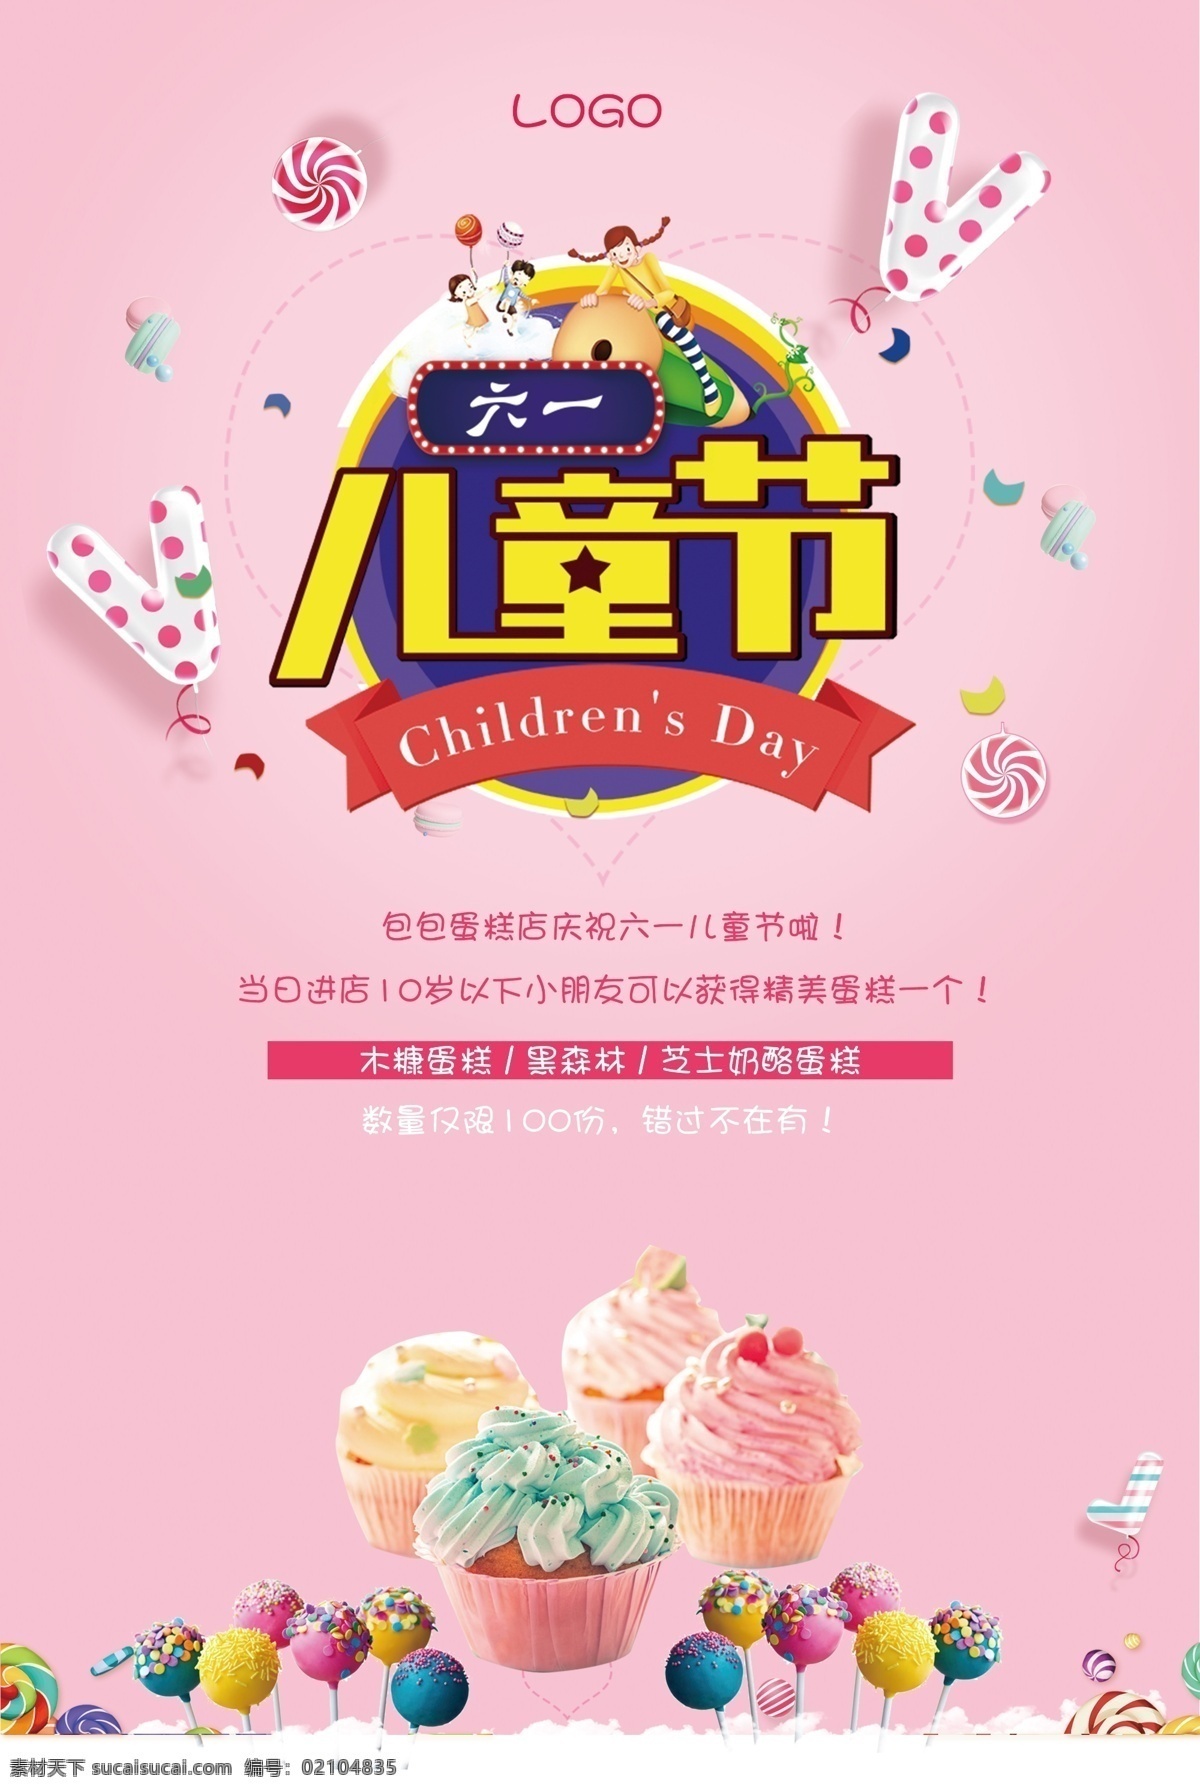 六一儿童节 甜品 糖果 蛋糕 促销 海报 儿童节 棒棒糖 61